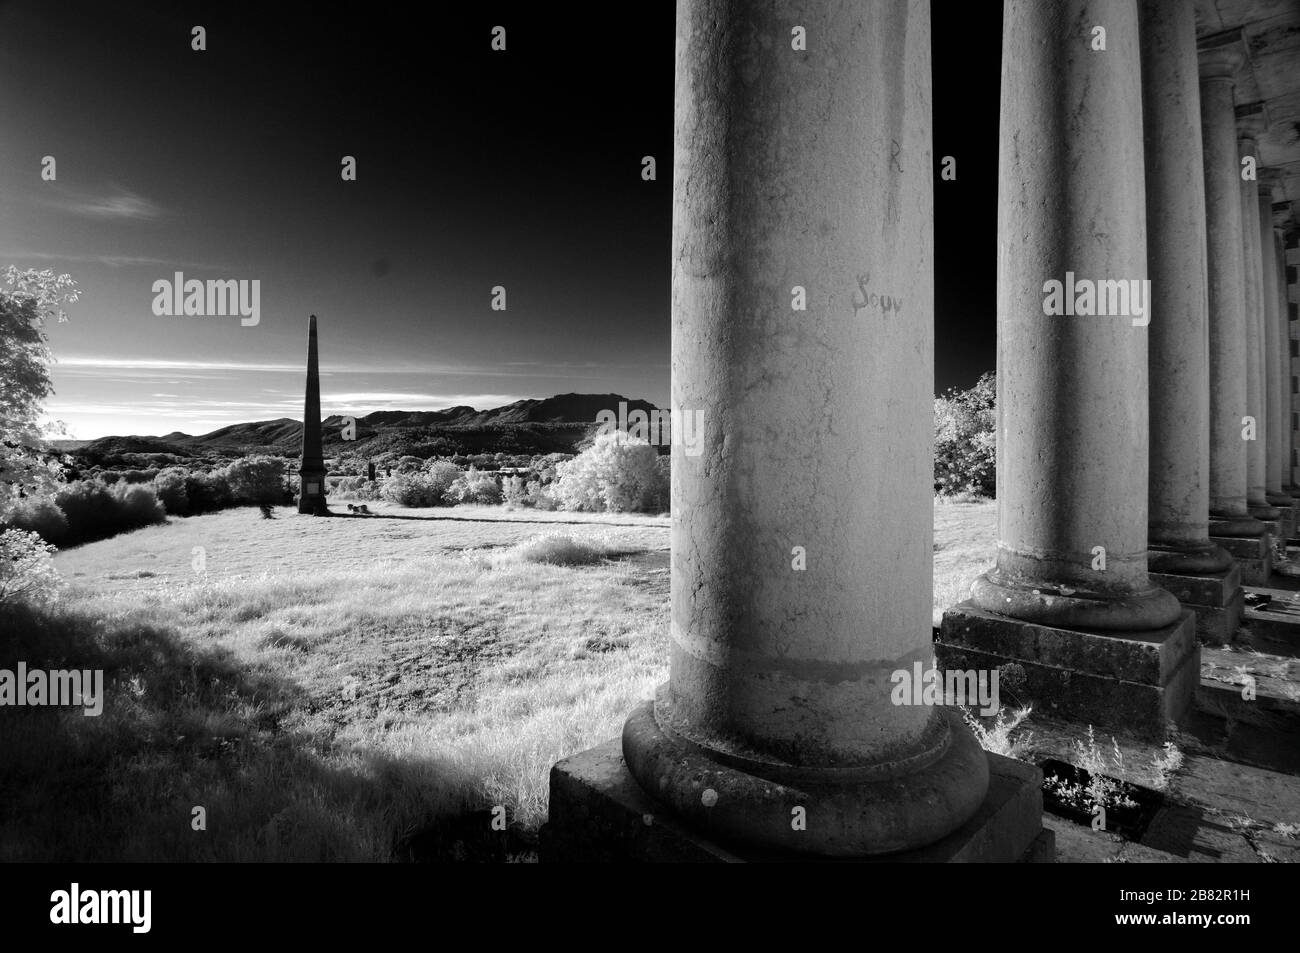 Infrarot-, Monochrom- oder Schwarz-Weiß-Bild der neoklassizistischen Fassade oder der Säulen der zerstörten Château de Valbelle Tourves Var Provence France Stockfoto